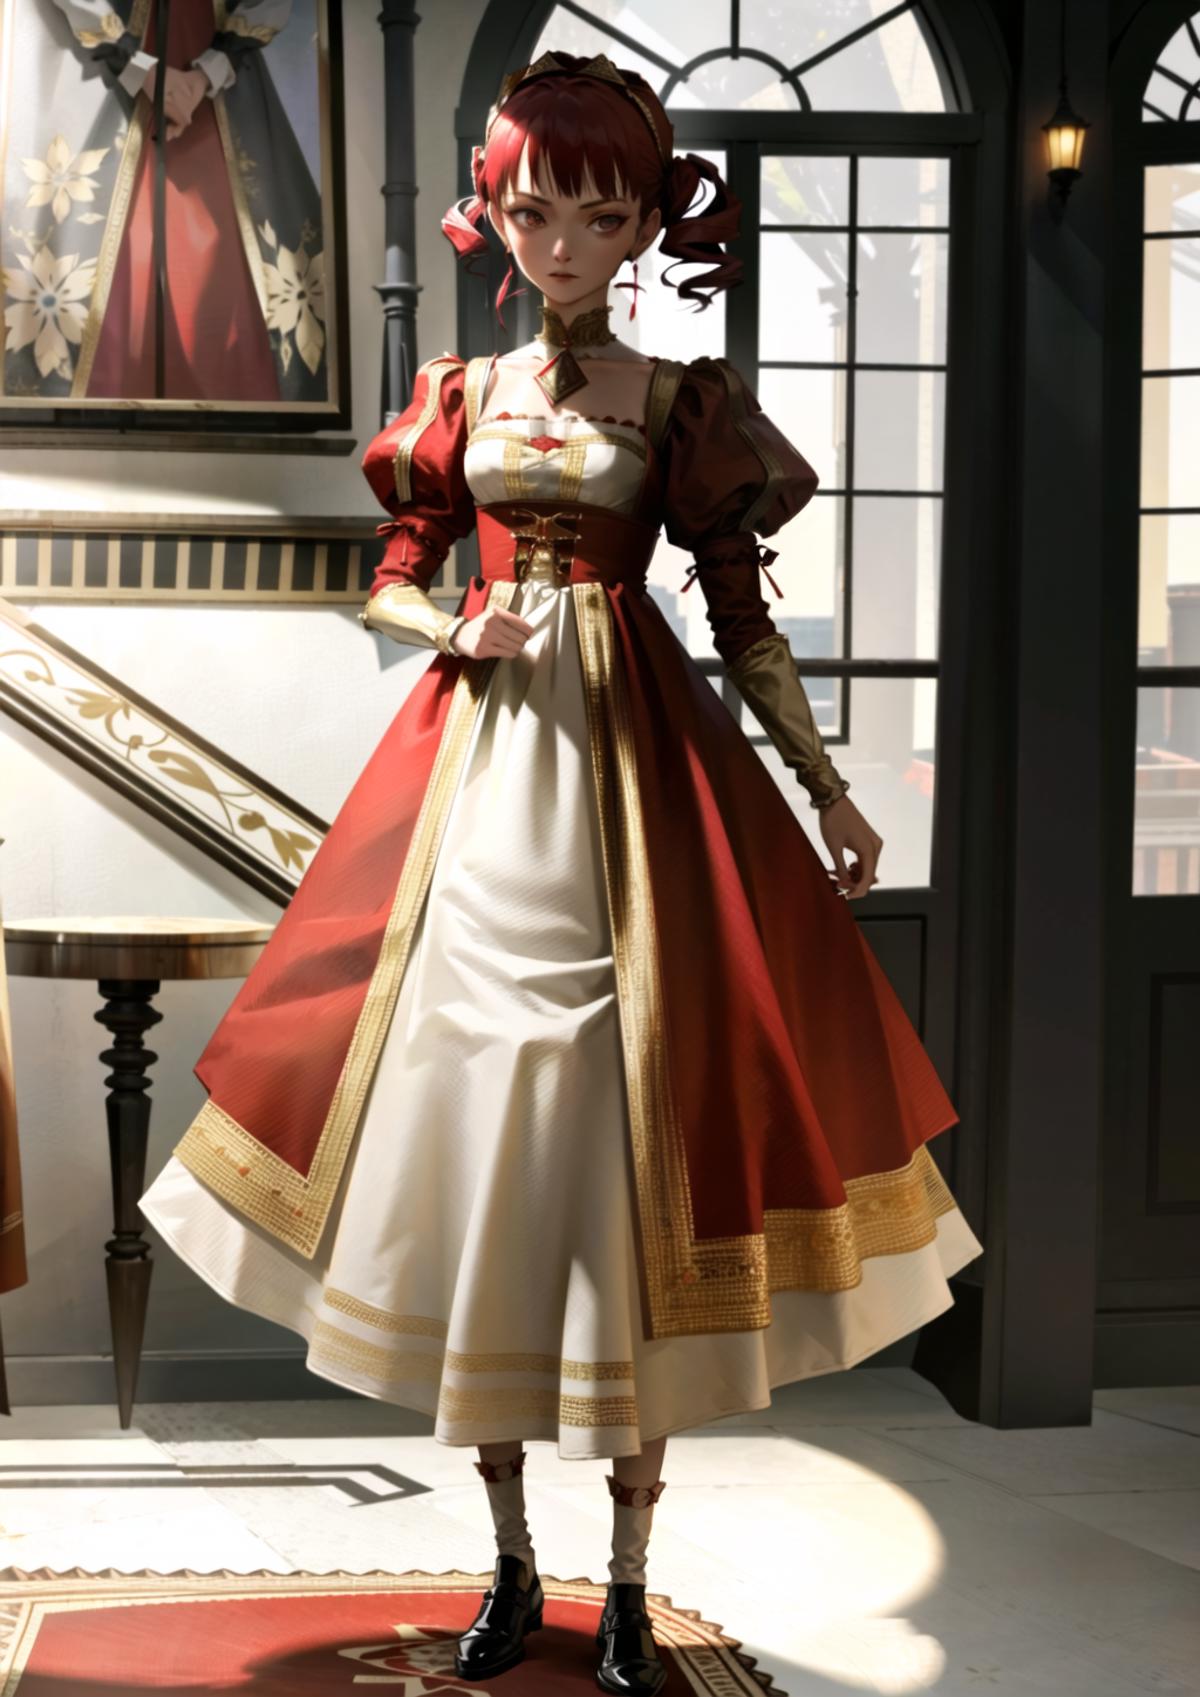 Renaissance Dress - by EDG image by soneeeeeee